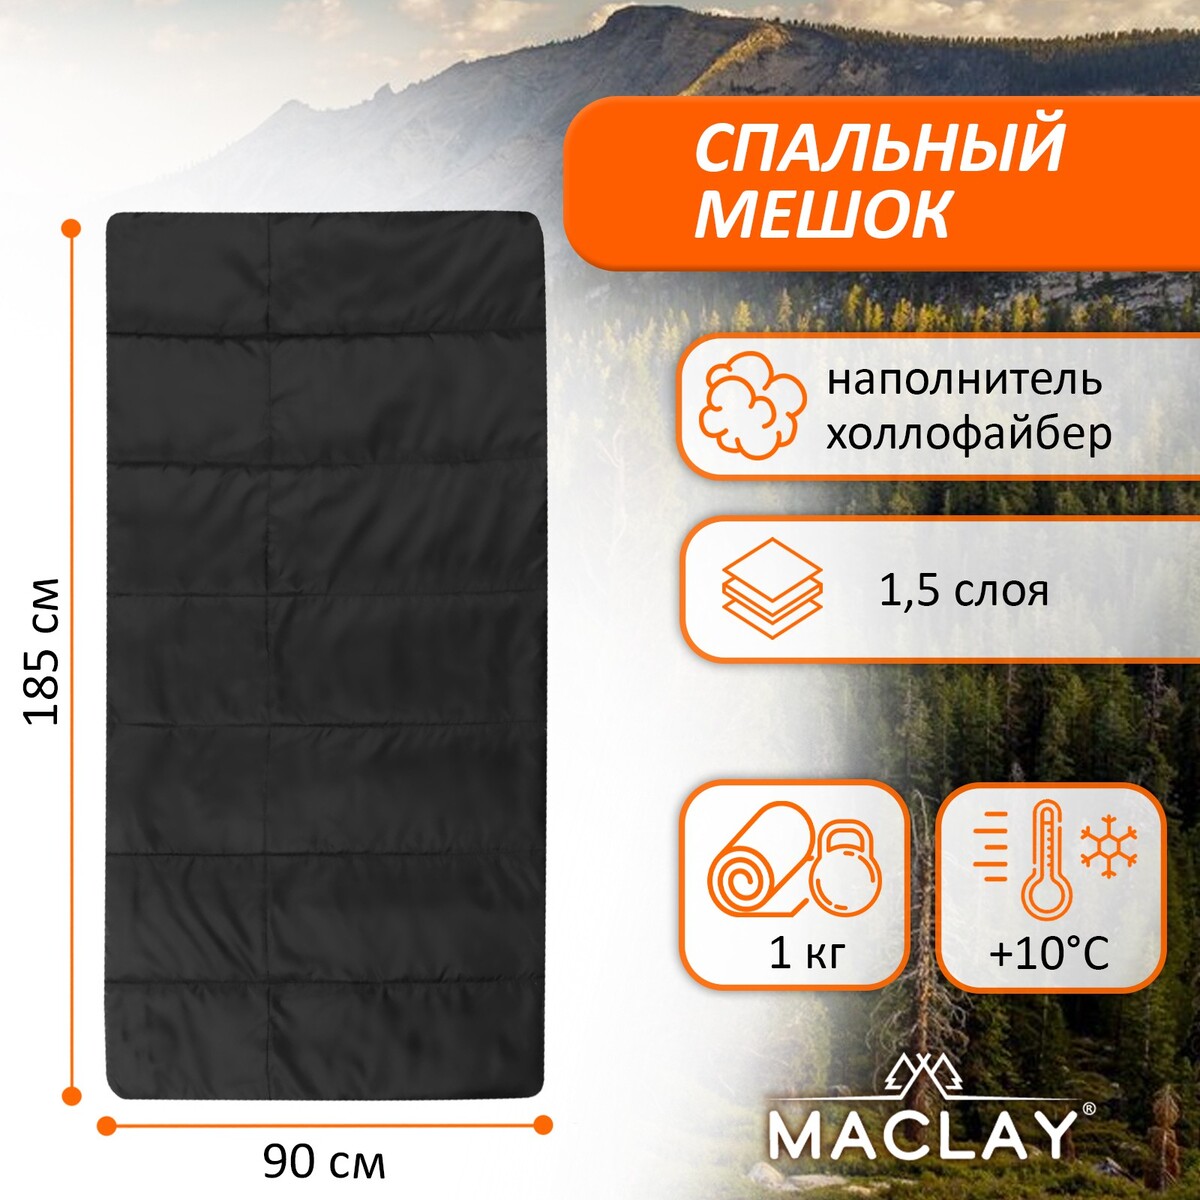 Спальный мешок maclay, 1.5 слоя, 185х90 см, +10/+25°с, эконом